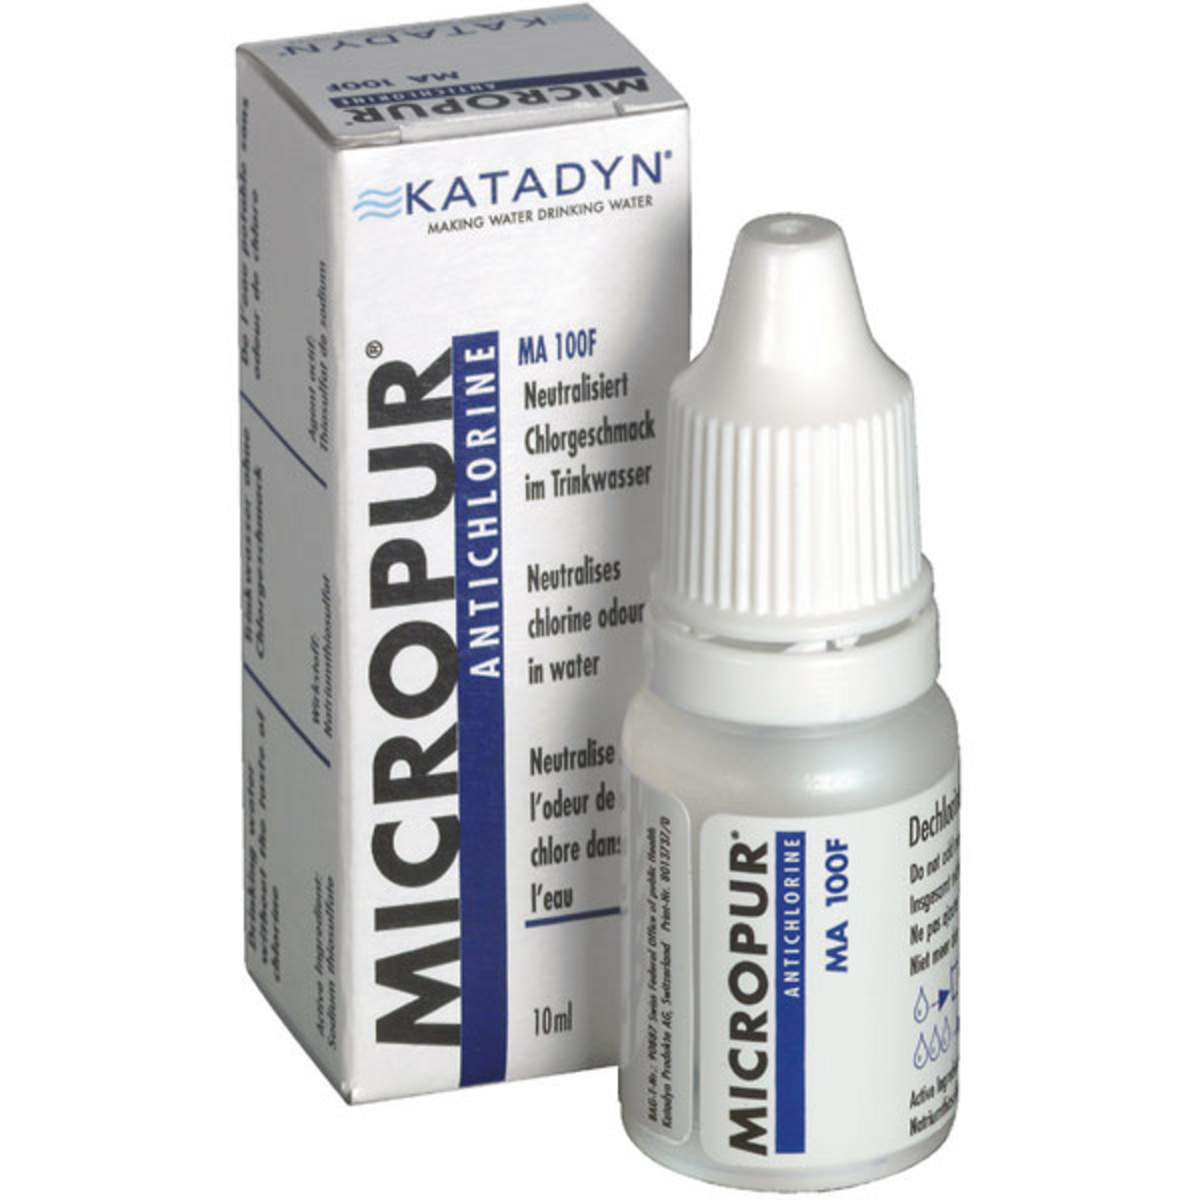 Image of Katadyn Micropur Antichlor MA 100F